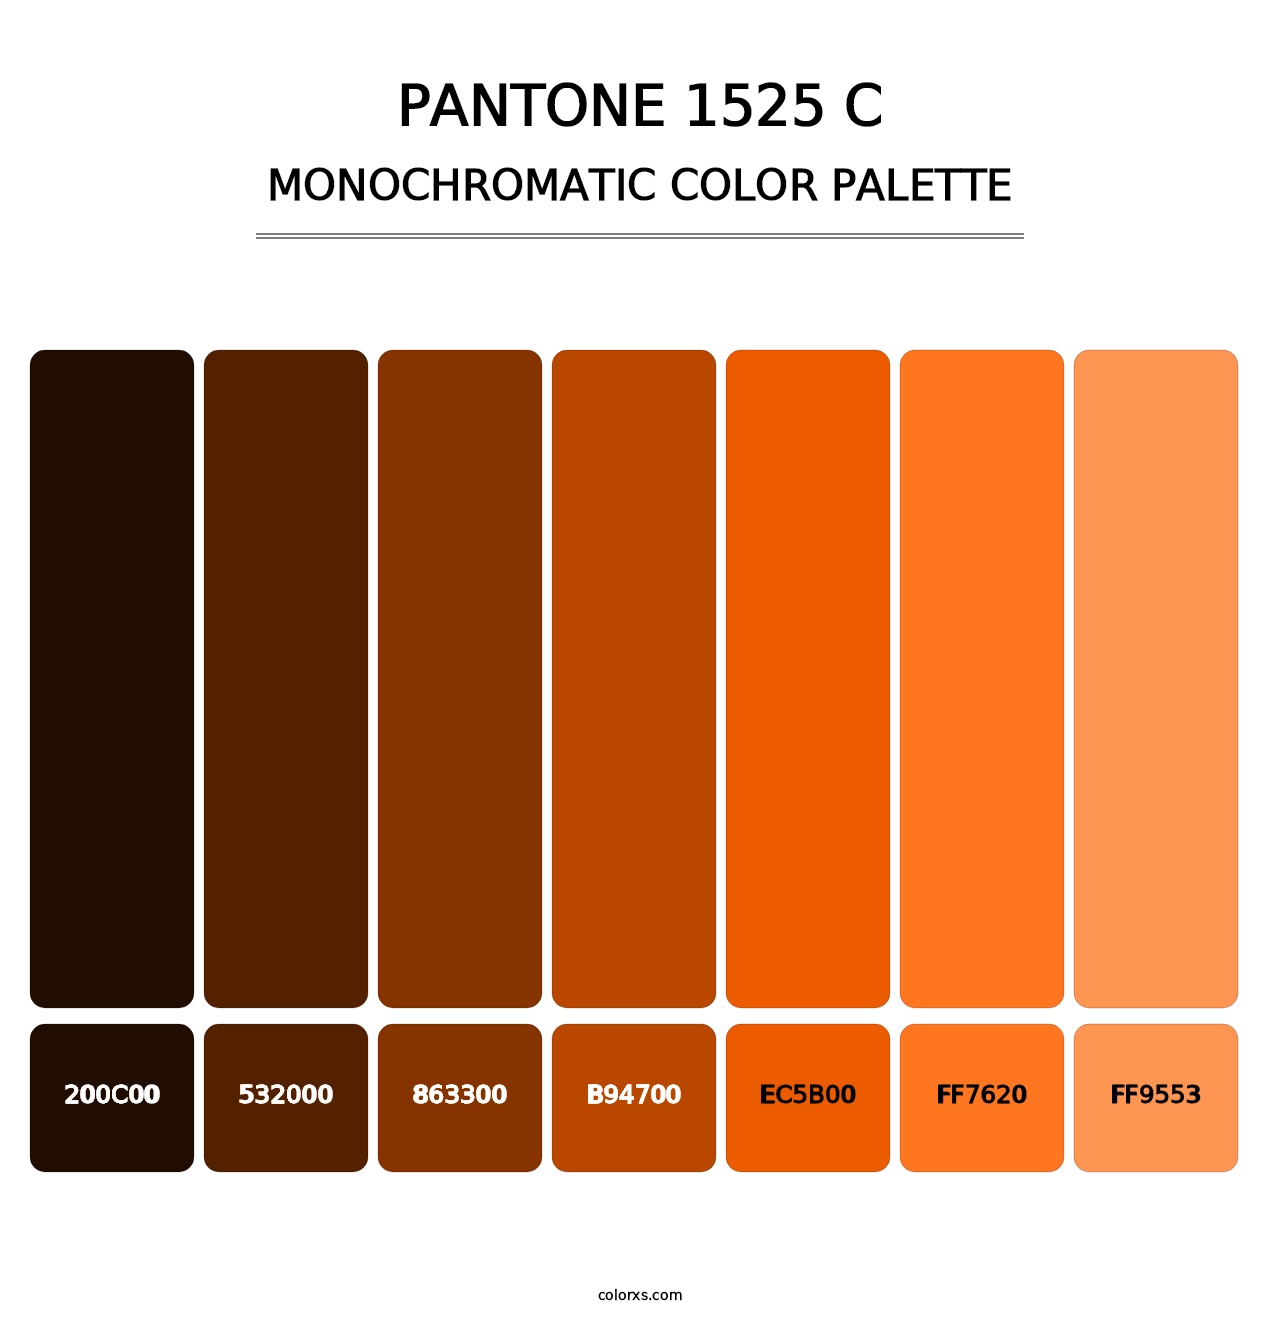 PANTONE 1525 C - Monochromatic Color Palette